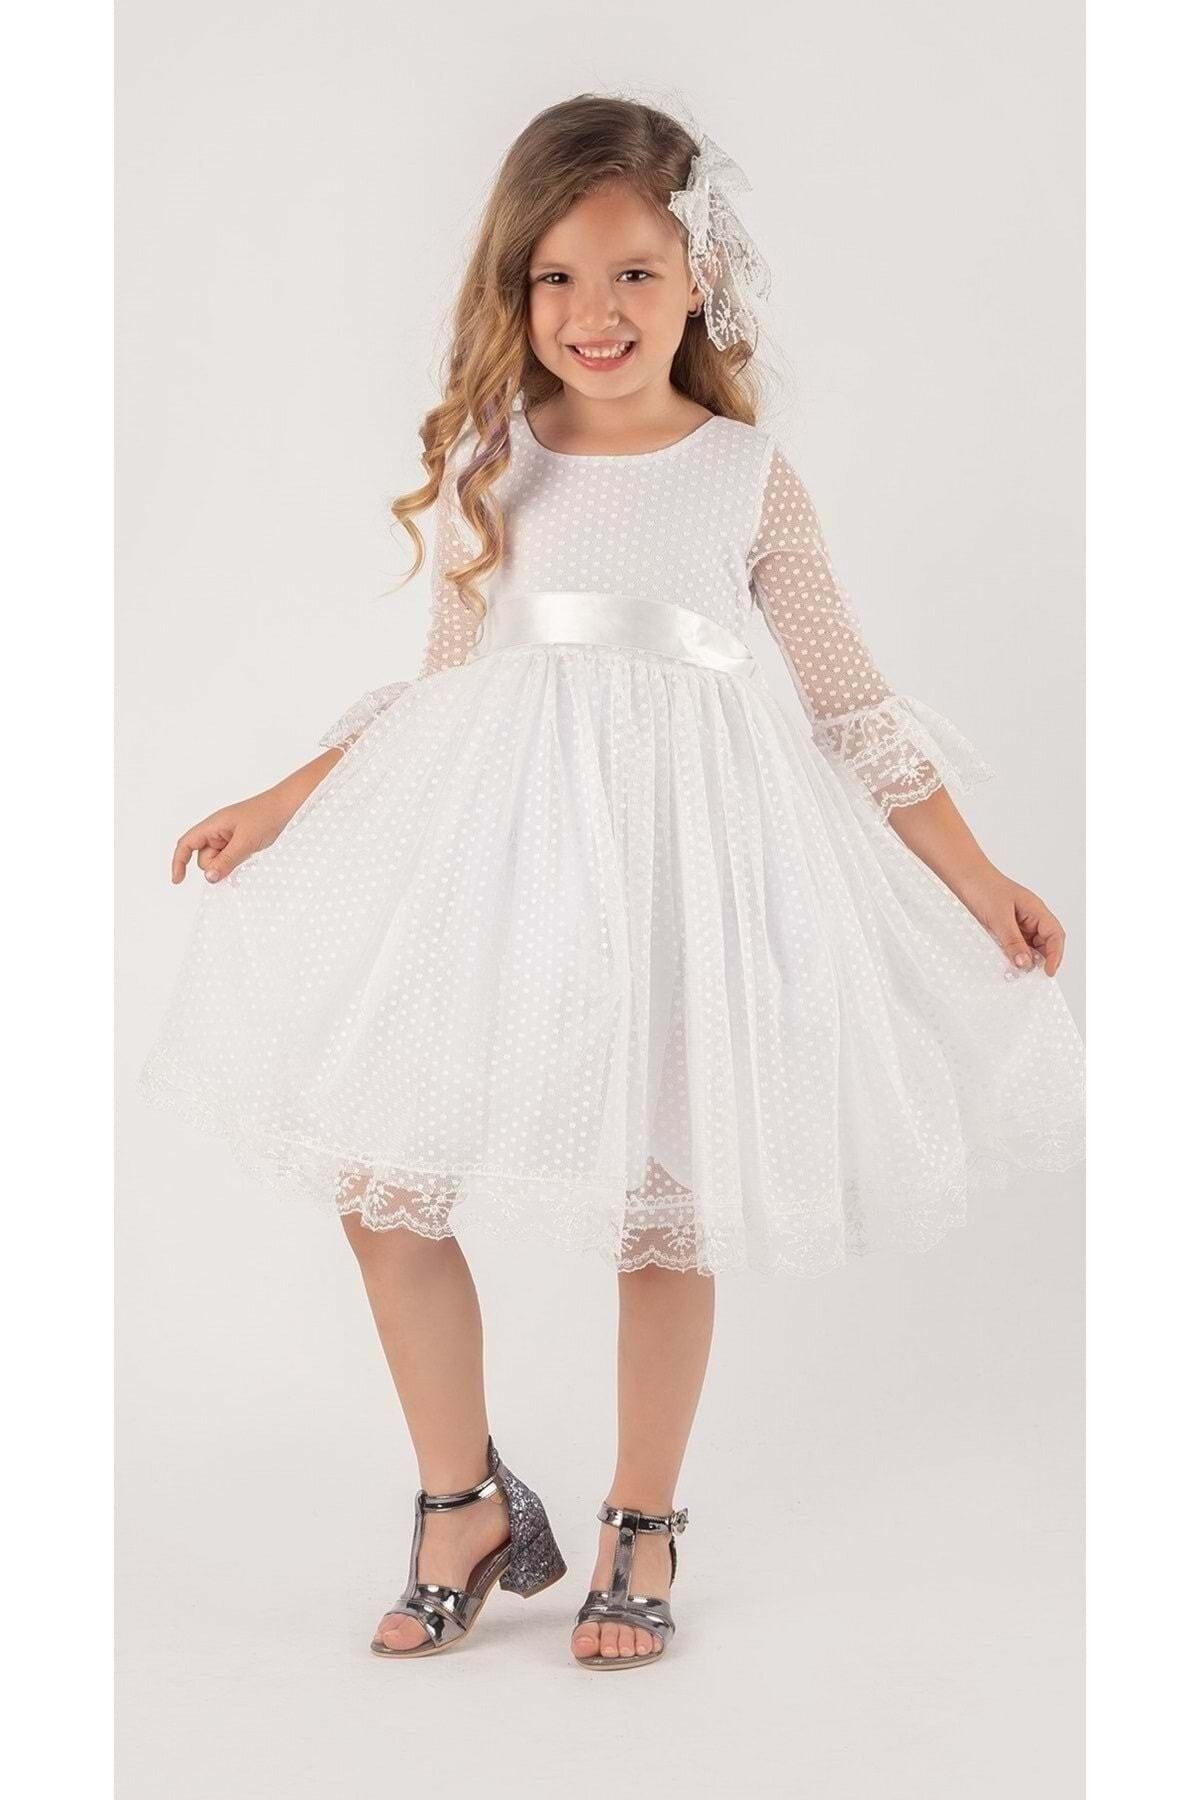 Mnk Rengarenk Fransız Dantel Tokalı Kız Çocuk Elbise Beyaz